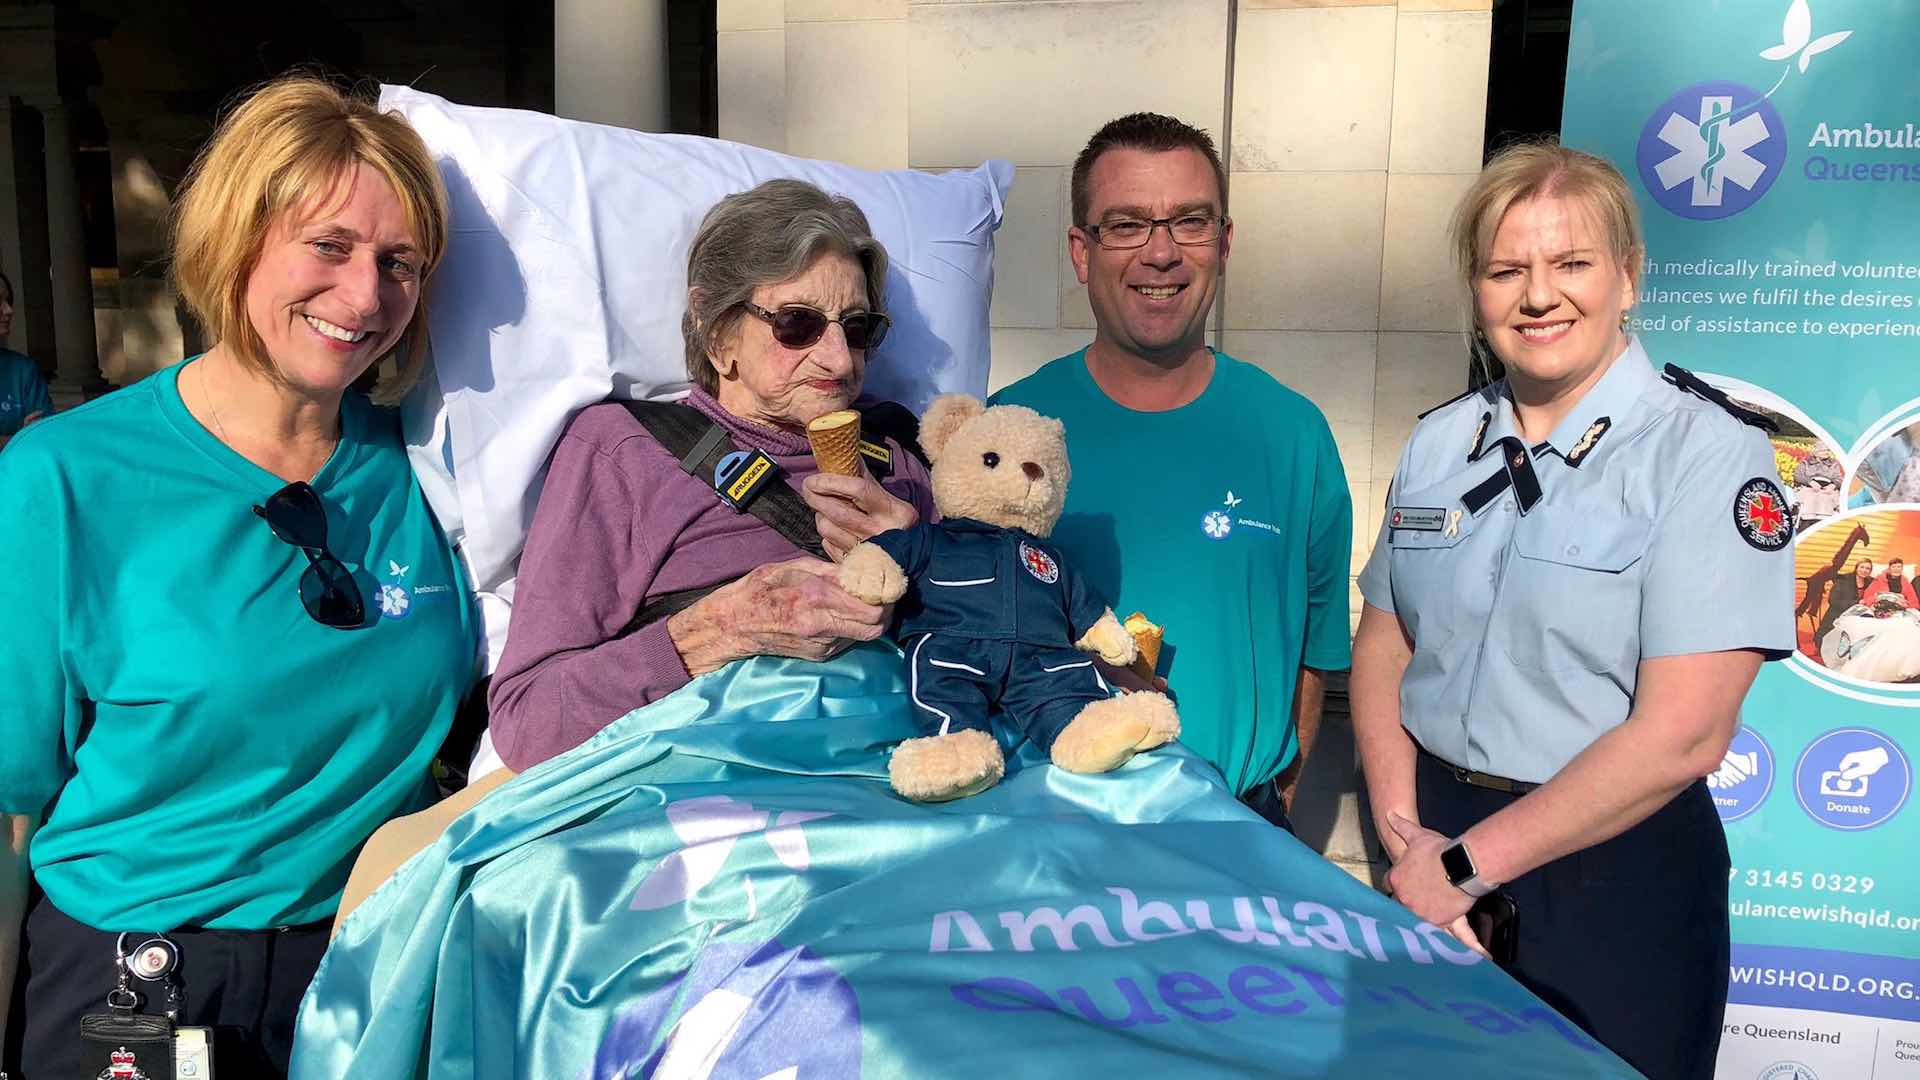 Australia destina una ambulancia a cumplir los últimos deseos de pacientes terminales